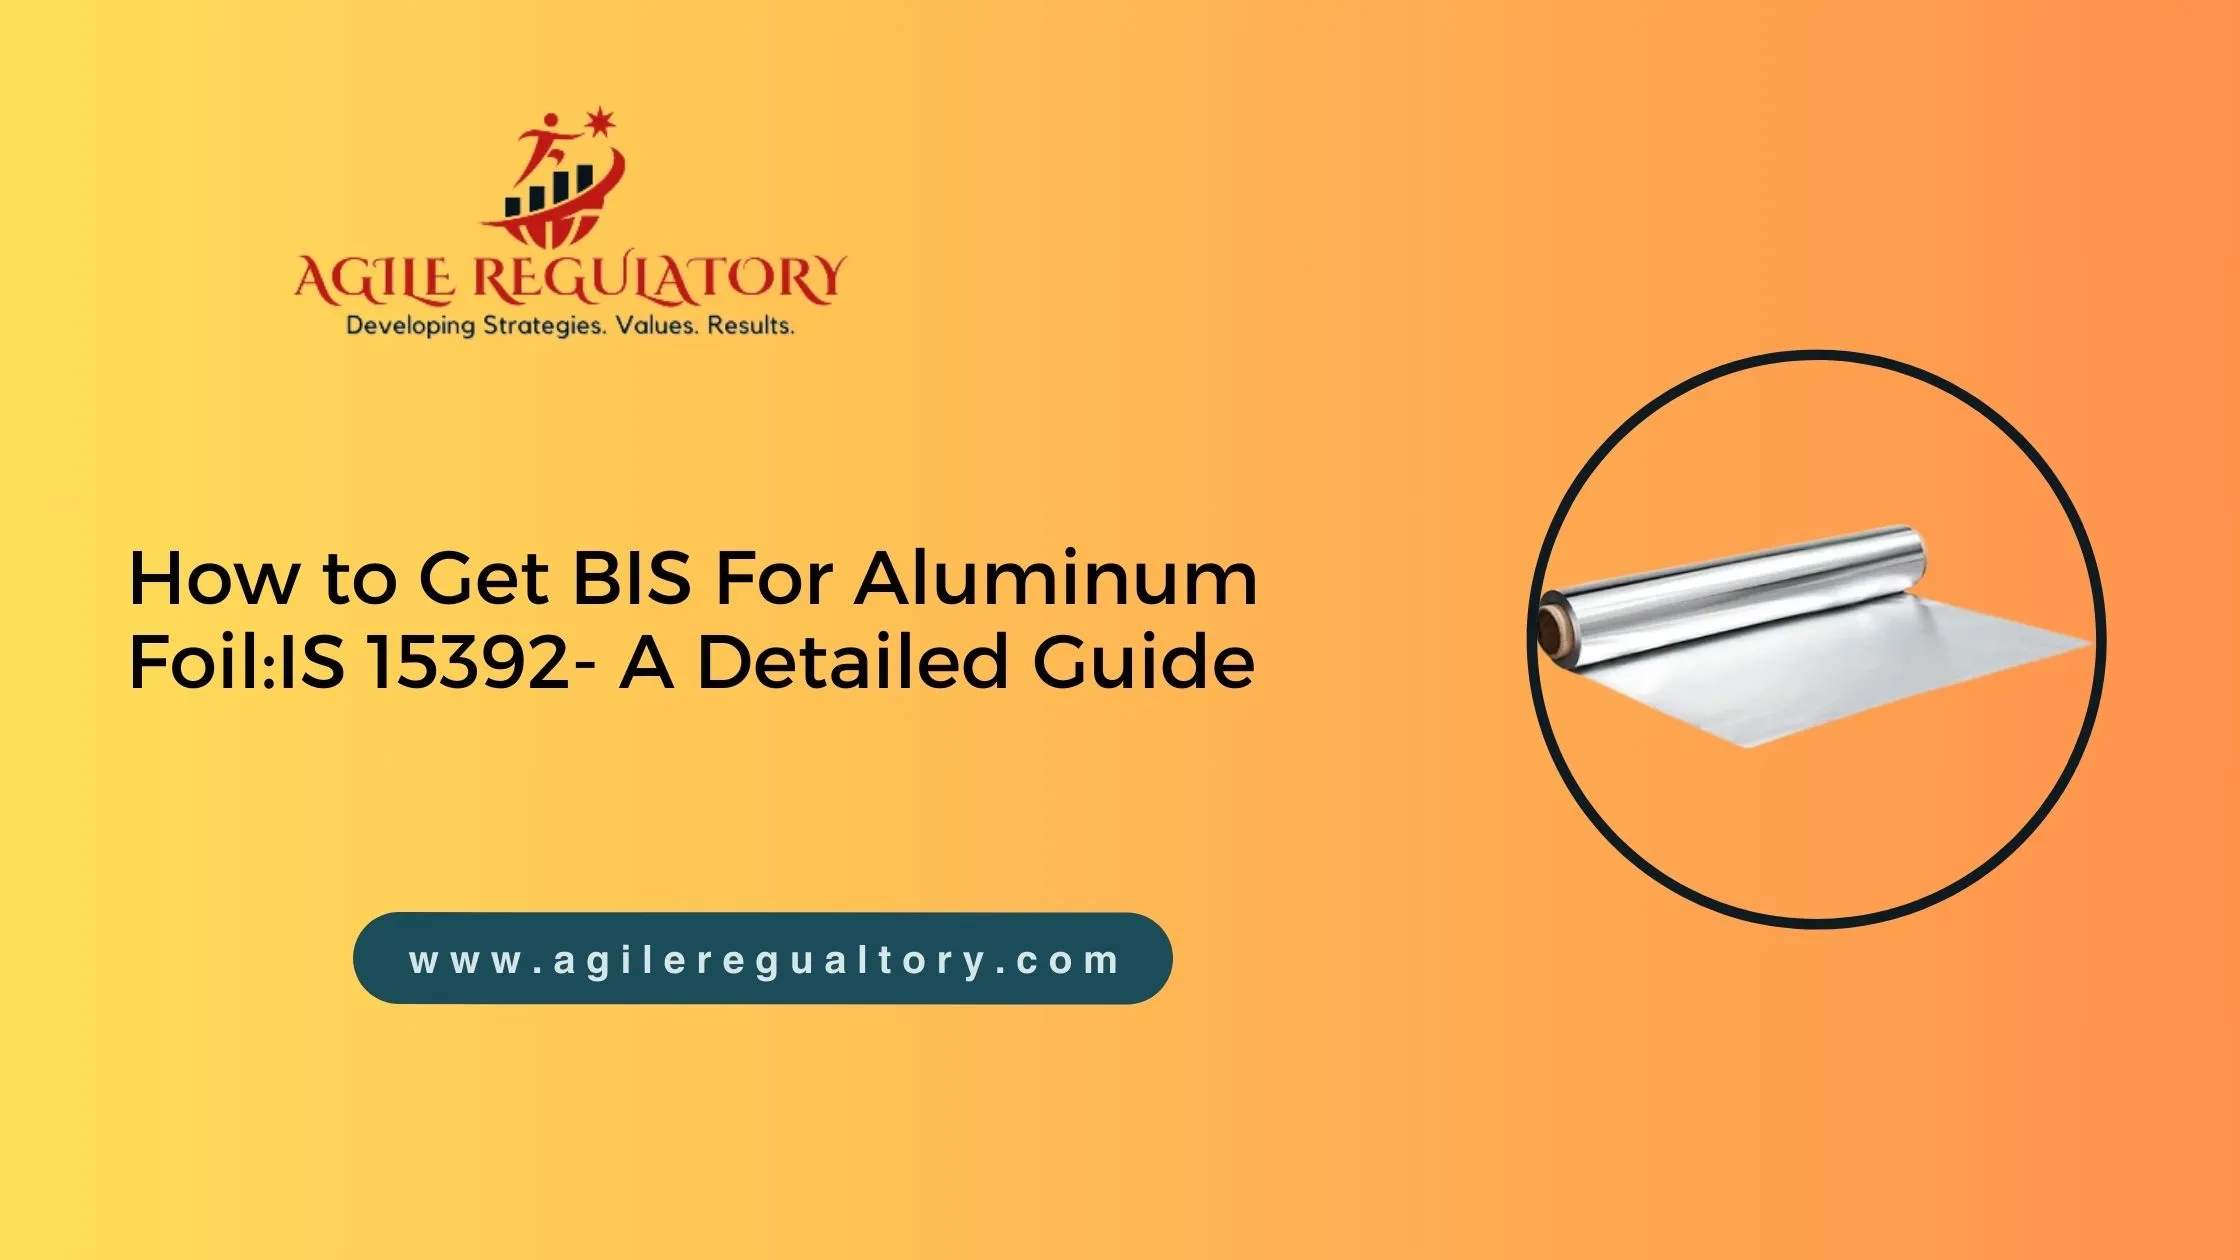 BIS for Aluminium Foil IS 15392:2003